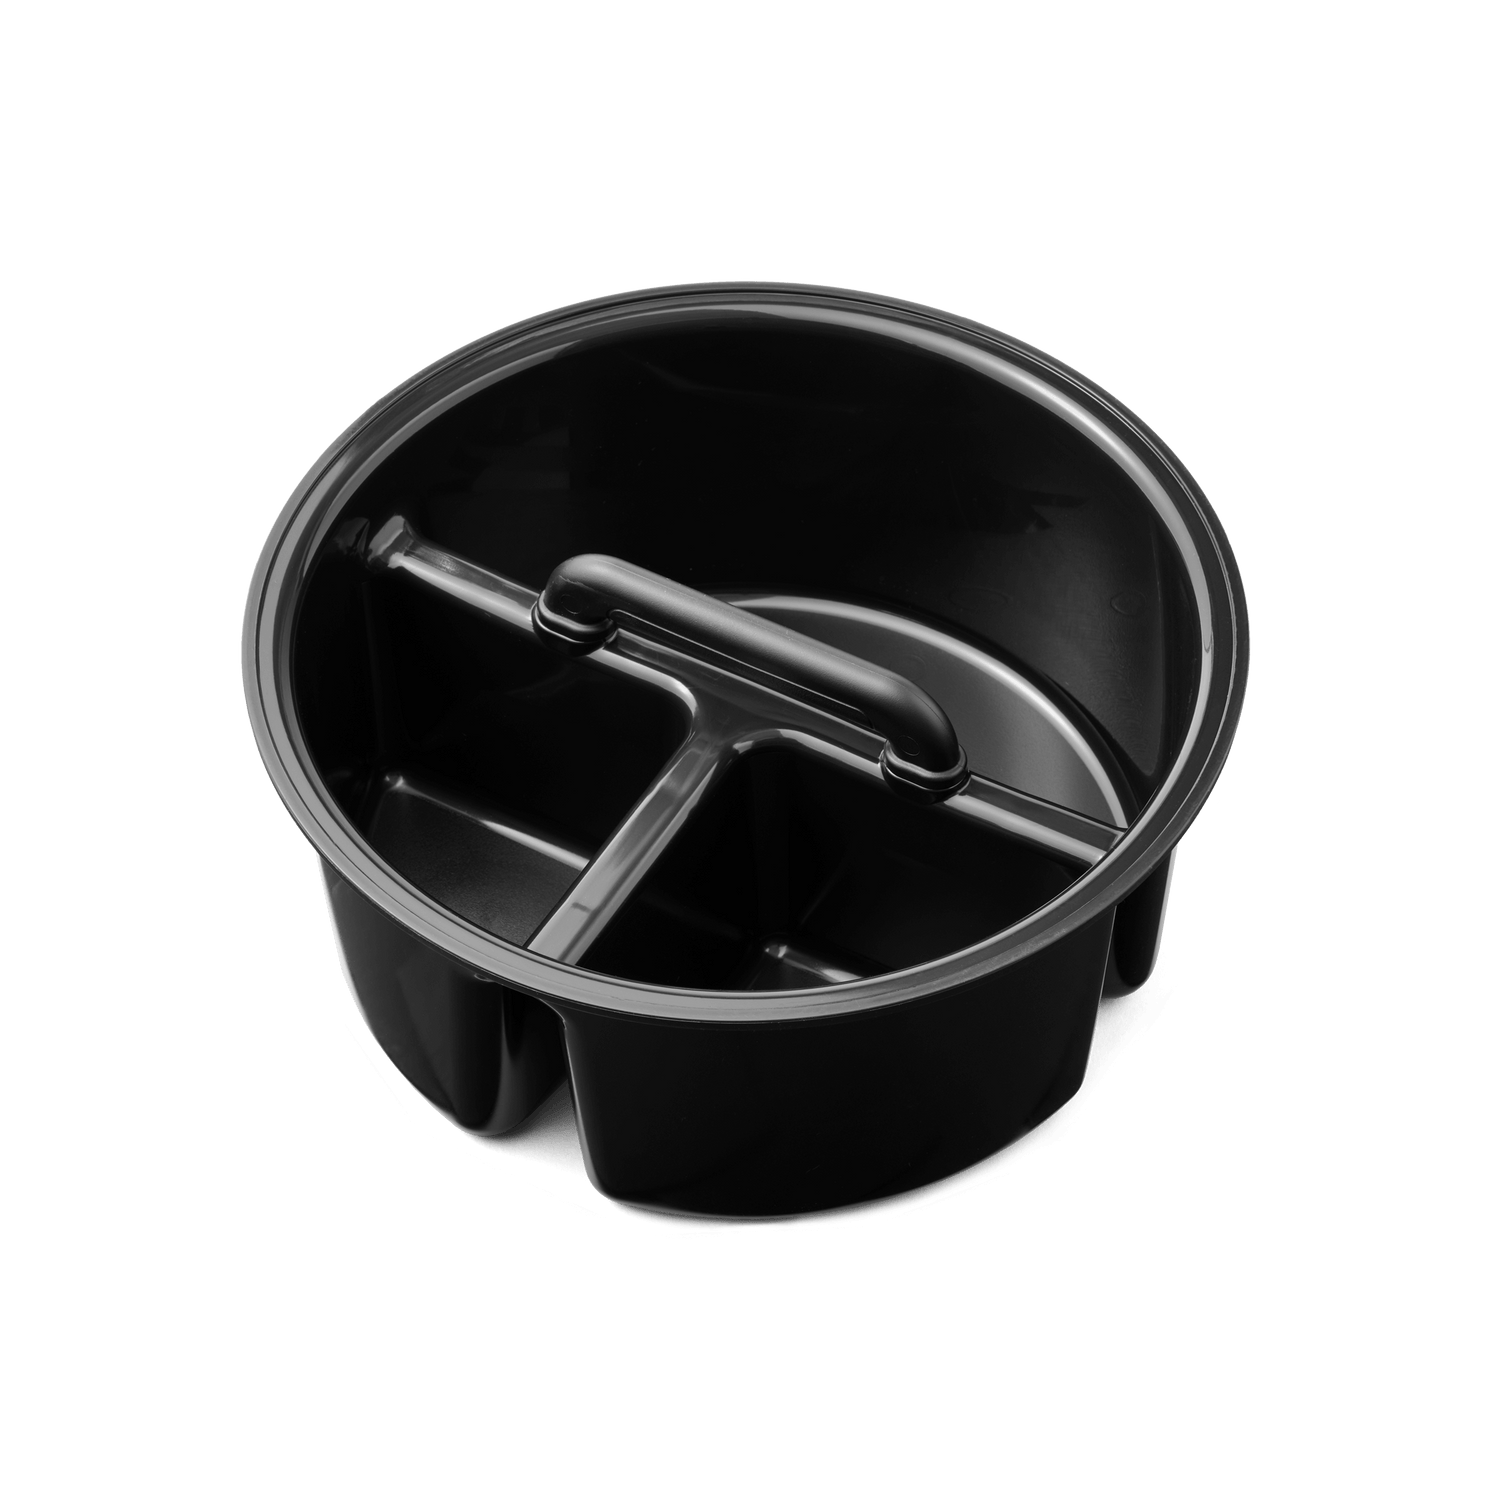 YETI® LoadOut Bucket Utility Gear Belt – YETI EUROPE